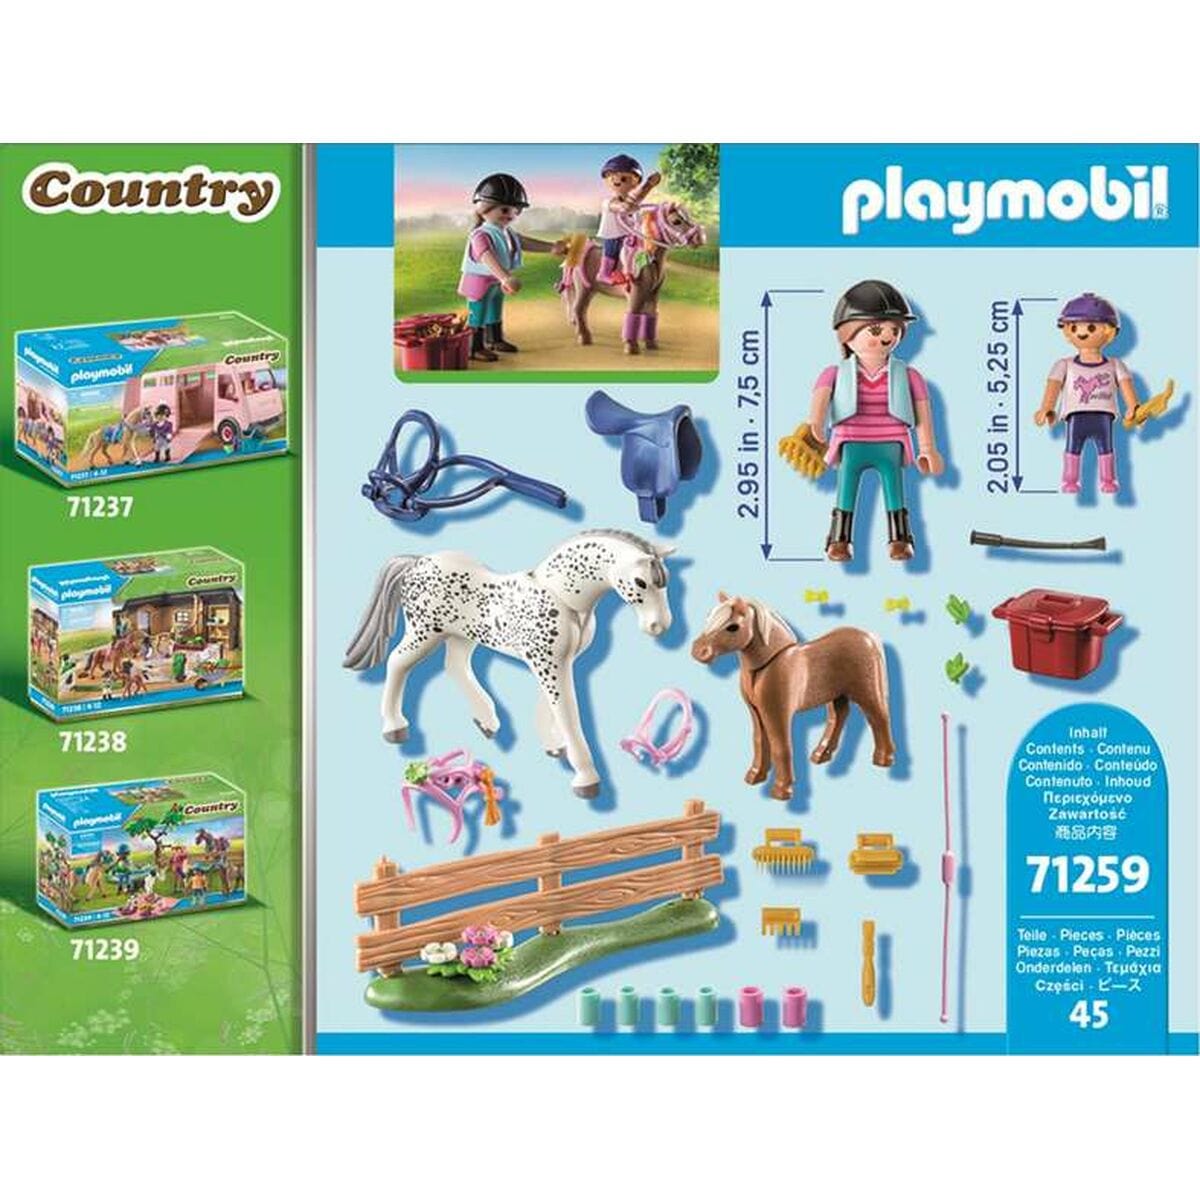 Playmobil Spielzeug | Kostüme > Spielzeug und Spiele > Weiteres spielzeug Playset Playmobil 71259 Country 45 Stücke